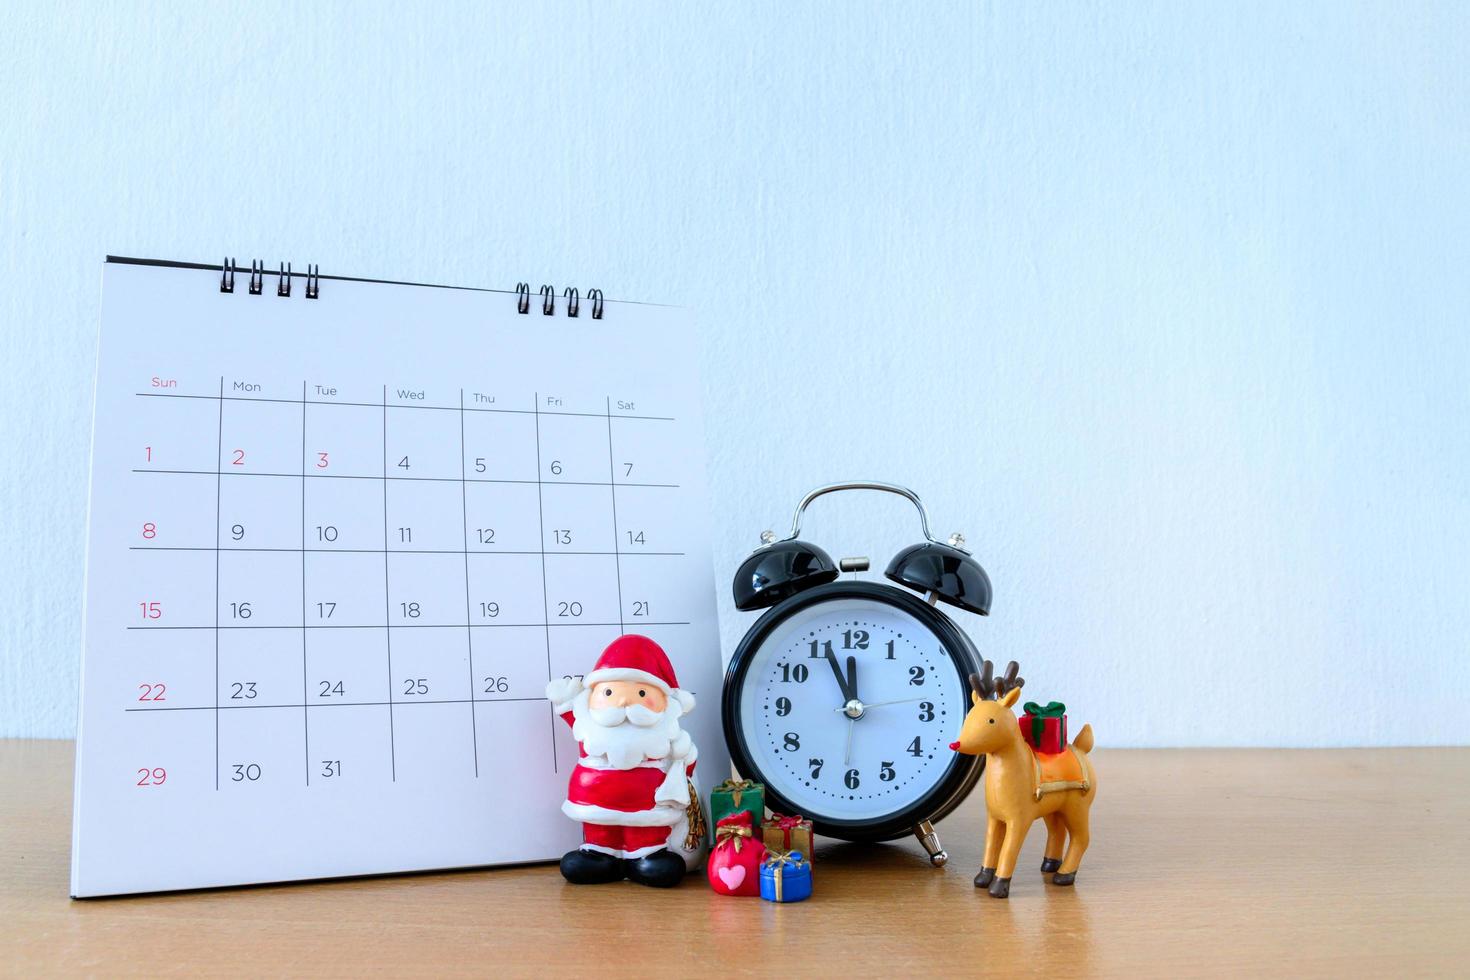 Kalender und Weihnachtsmann auf dem Tisch. frohes neues jahr und weihnachtskonzept foto